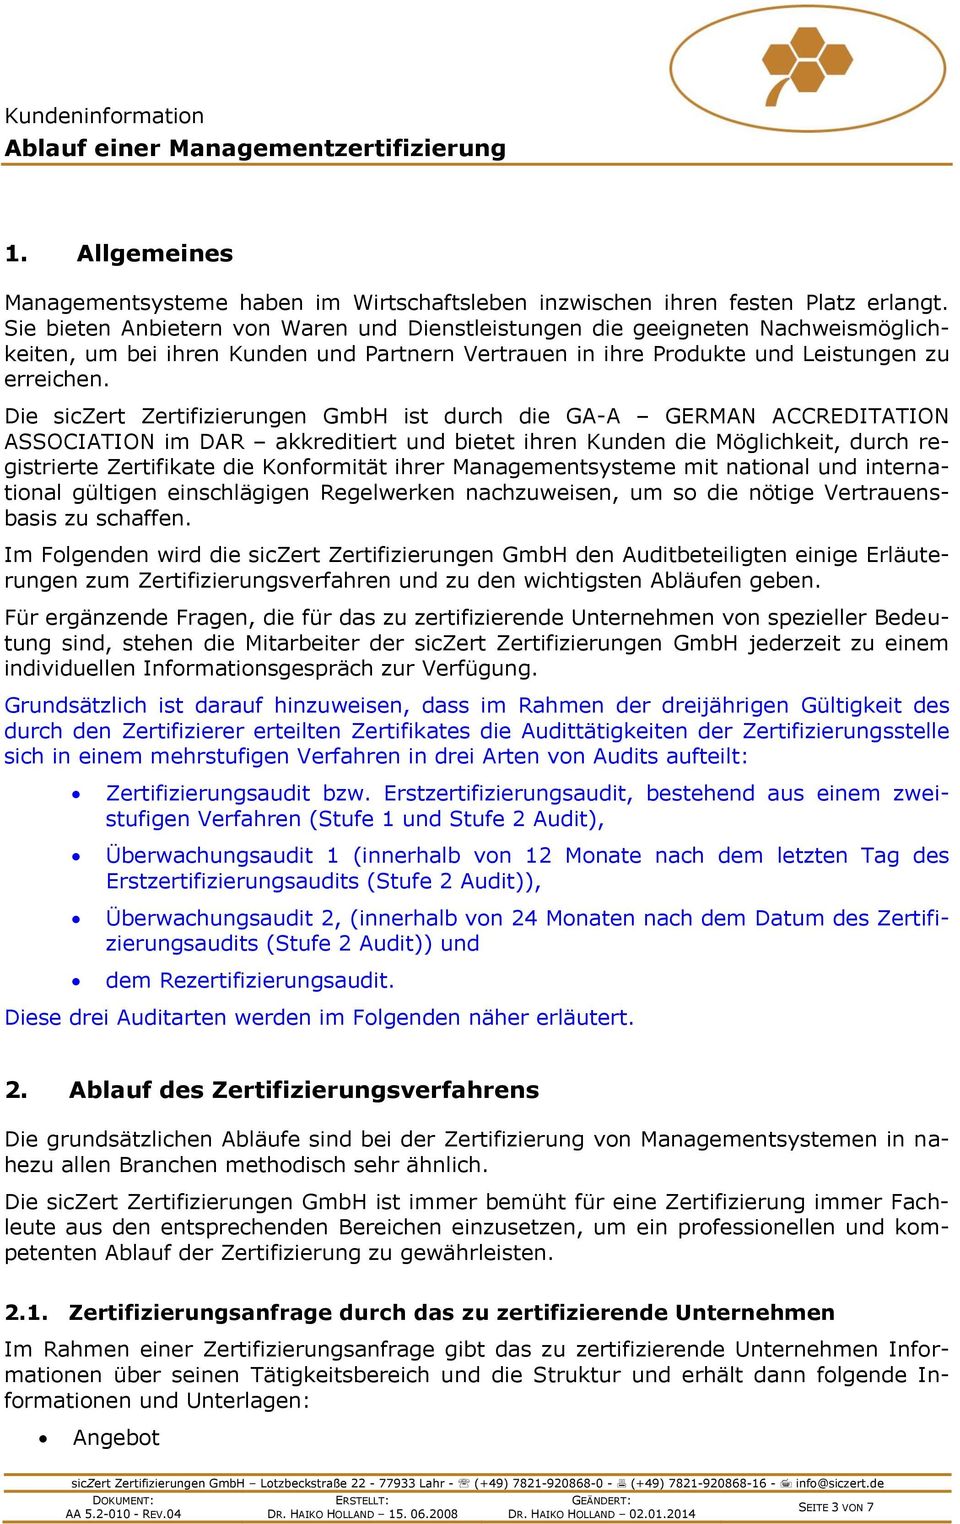 Die siczert Zertifizierungen GmbH ist durch die GA-A GERMAN ACCREDITATION ASSOCIATION im DAR akkreditiert und bietet ihren Kunden die Möglichkeit, durch registrierte Zertifikate die Konformität ihrer